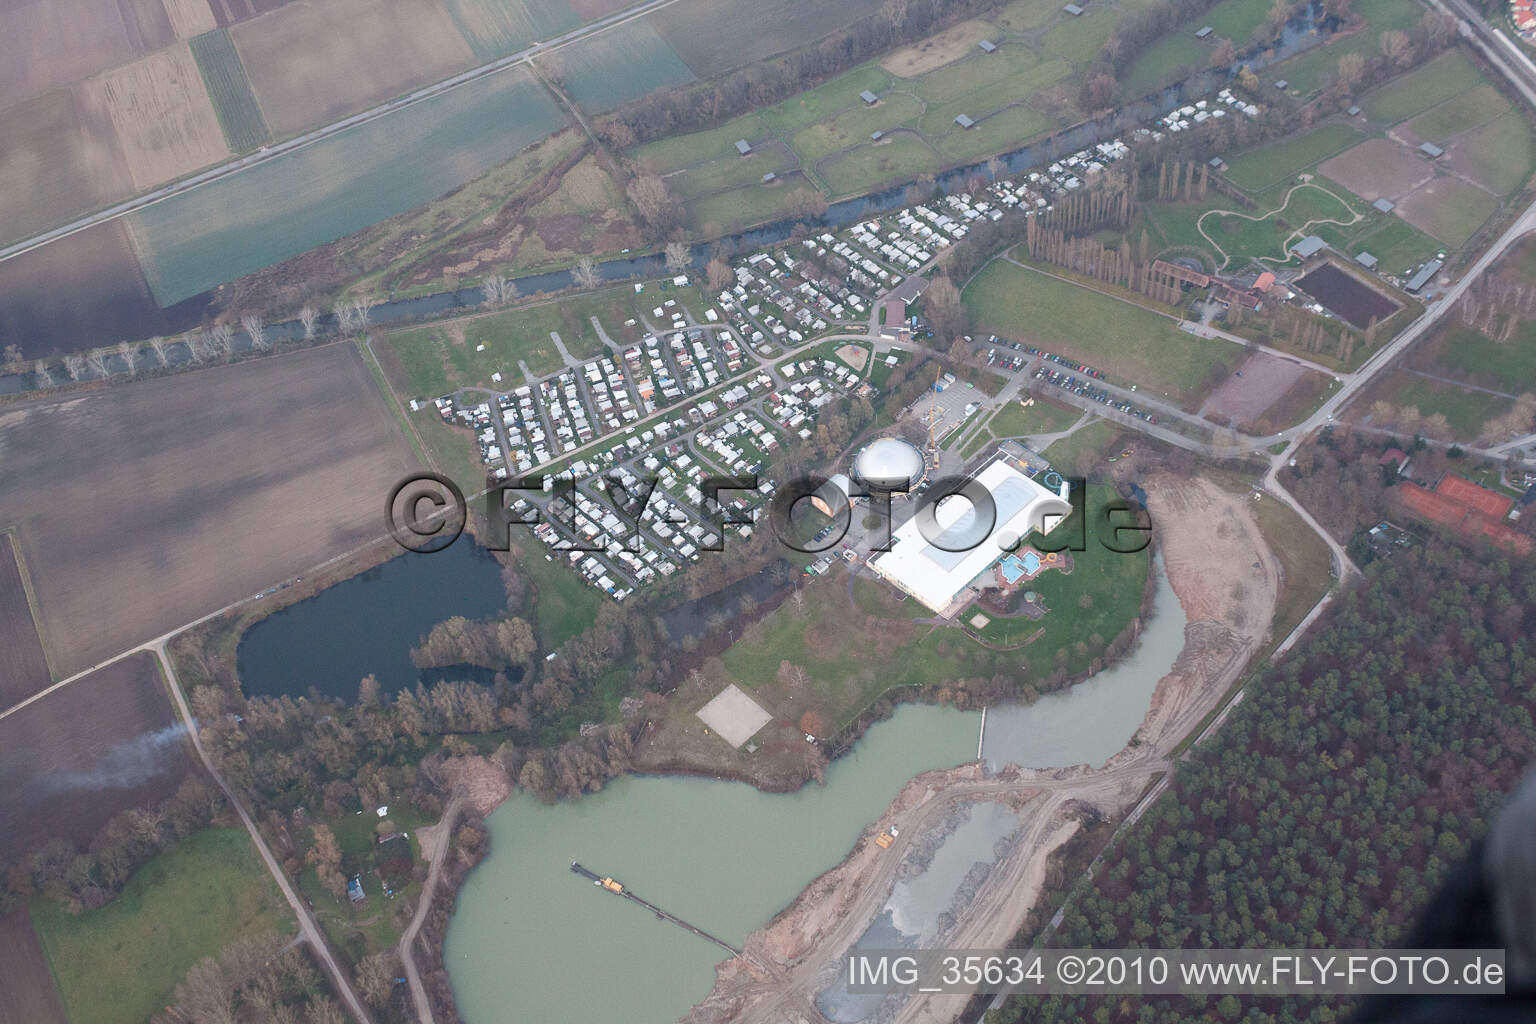 Vue aérienne de Site de camp à Rülzheim dans le département Rhénanie-Palatinat, Allemagne